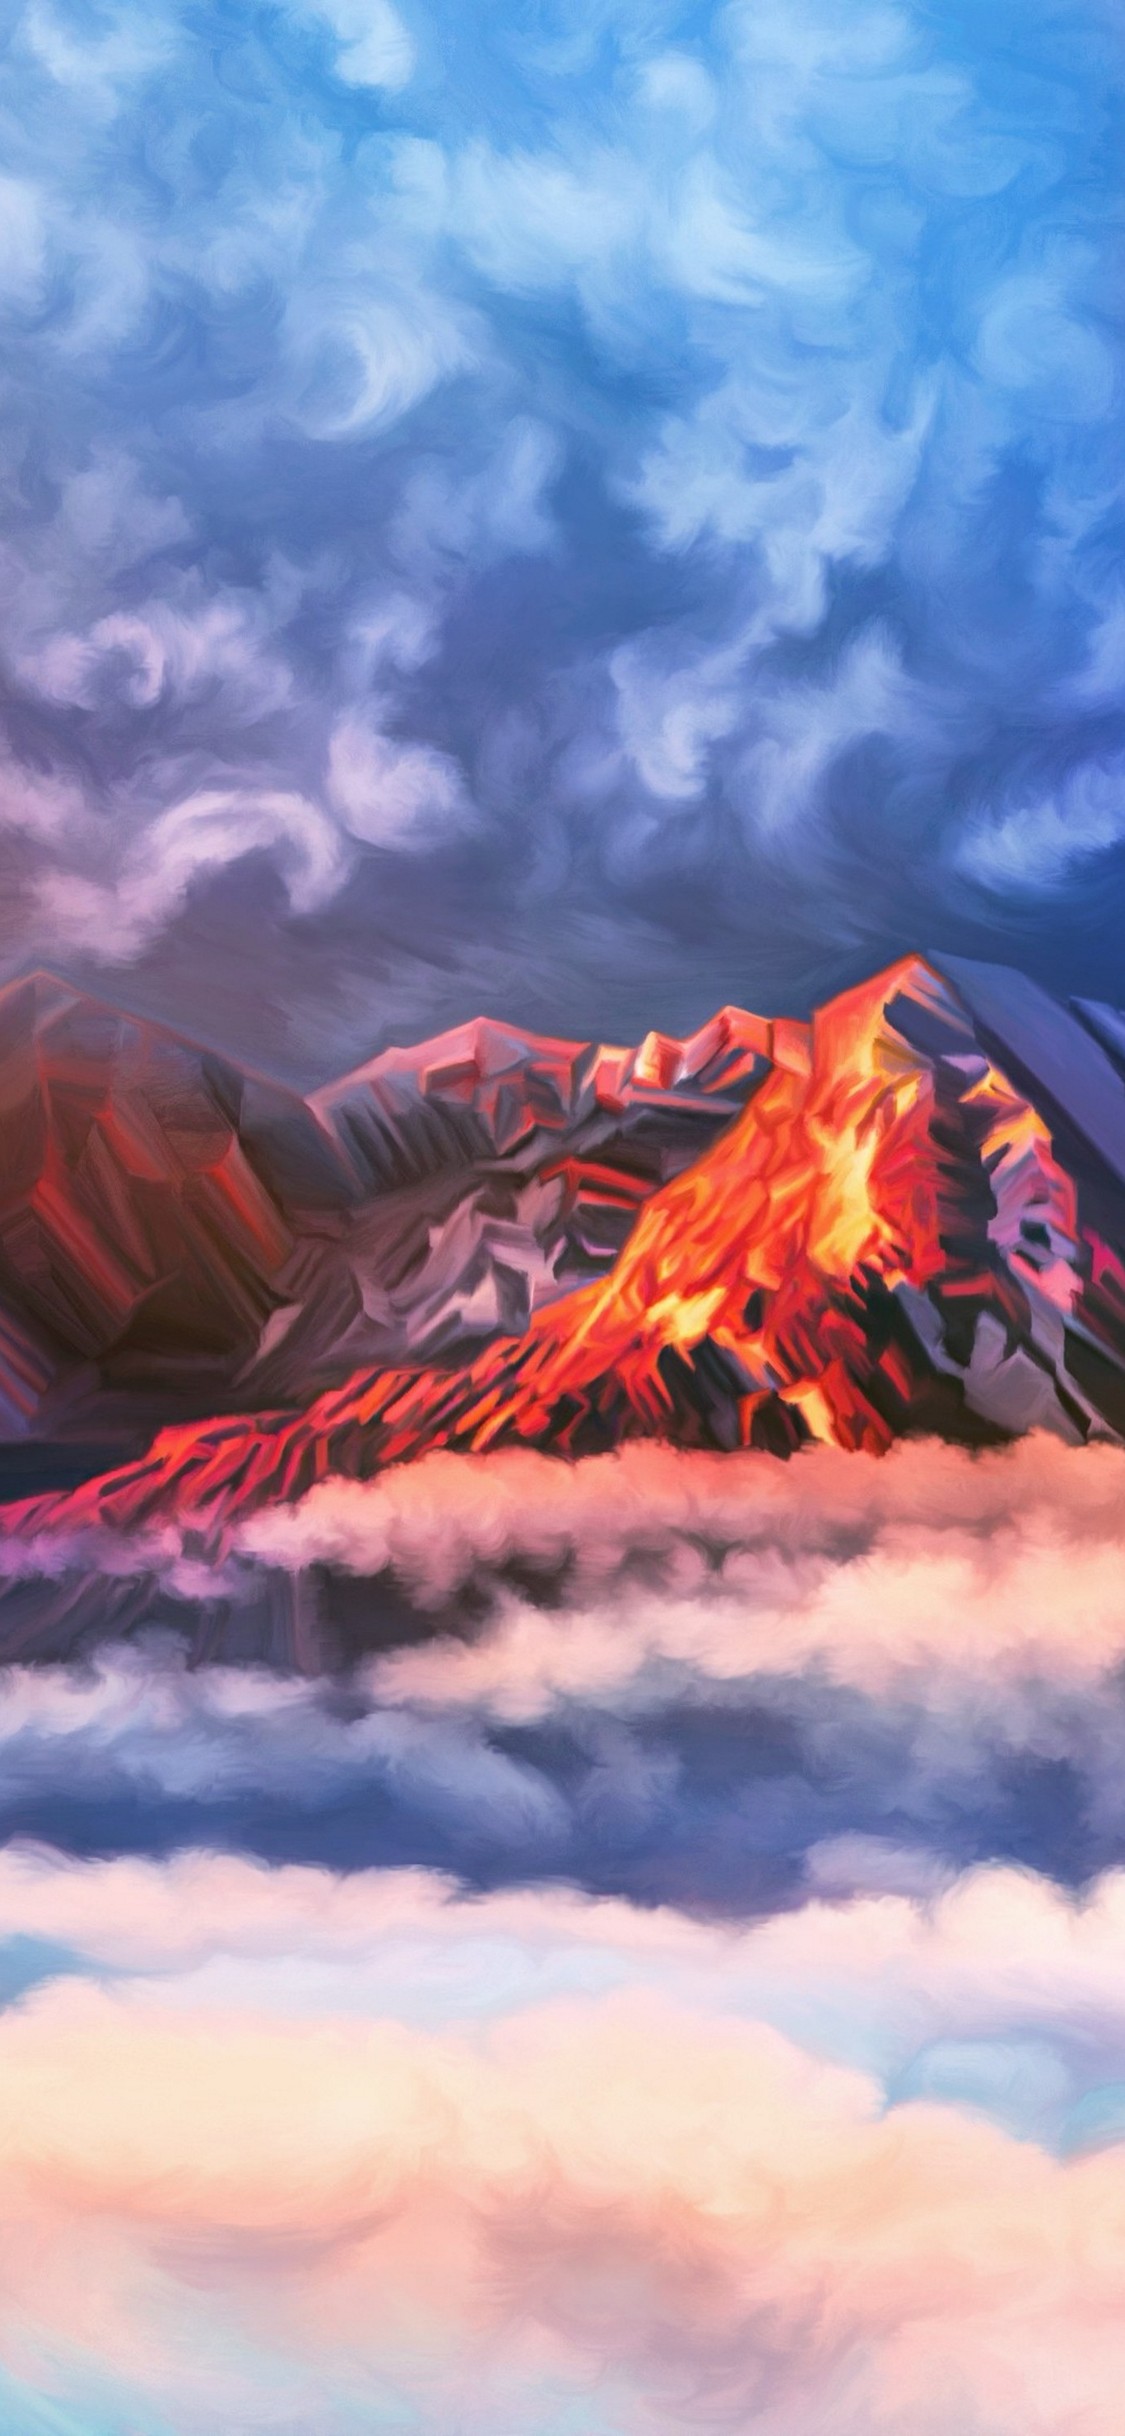 煙立ち込める火山のイラスト Iphone Xs スマホ壁紙 待ち受け スマラン